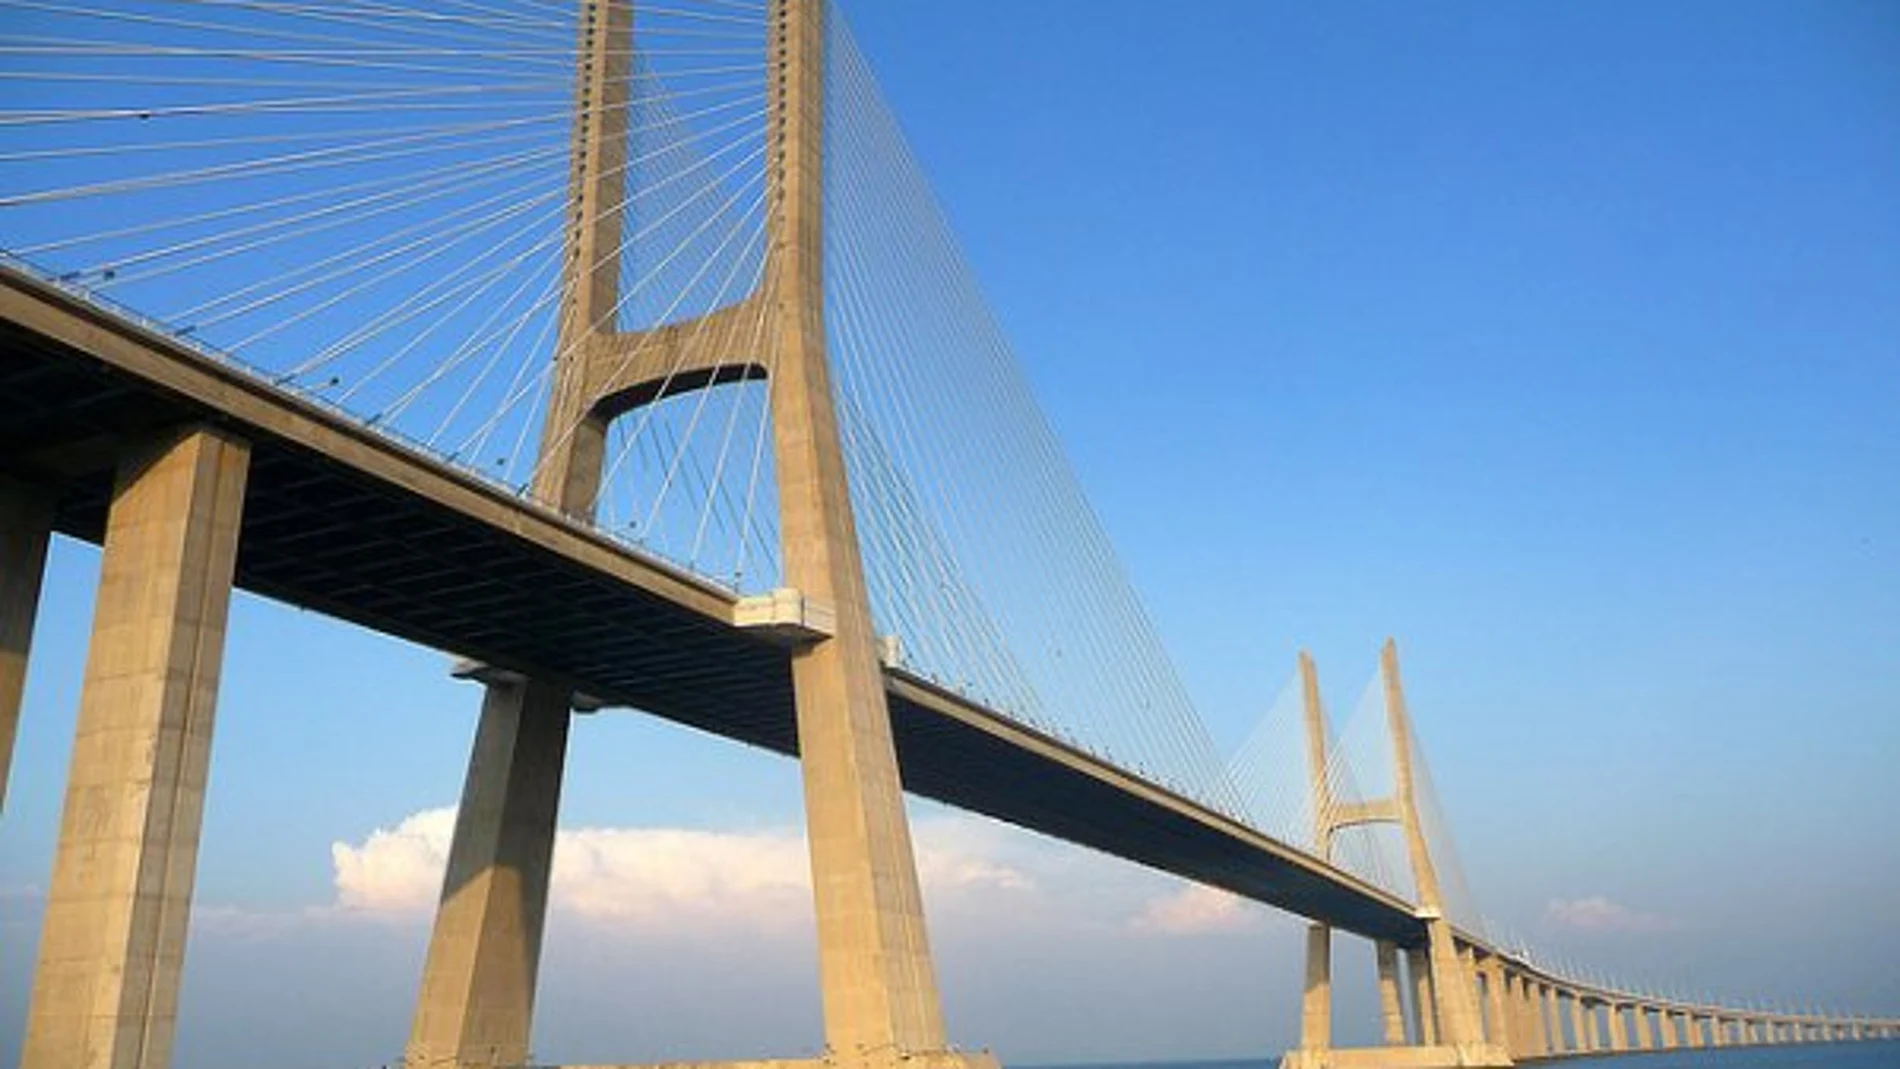 Efemérides de hoy 4 de abril de 2022: El 4 de abril de 1998, se inauguró en Lisboa el puente Vasco de Gama sobre el río Tajo